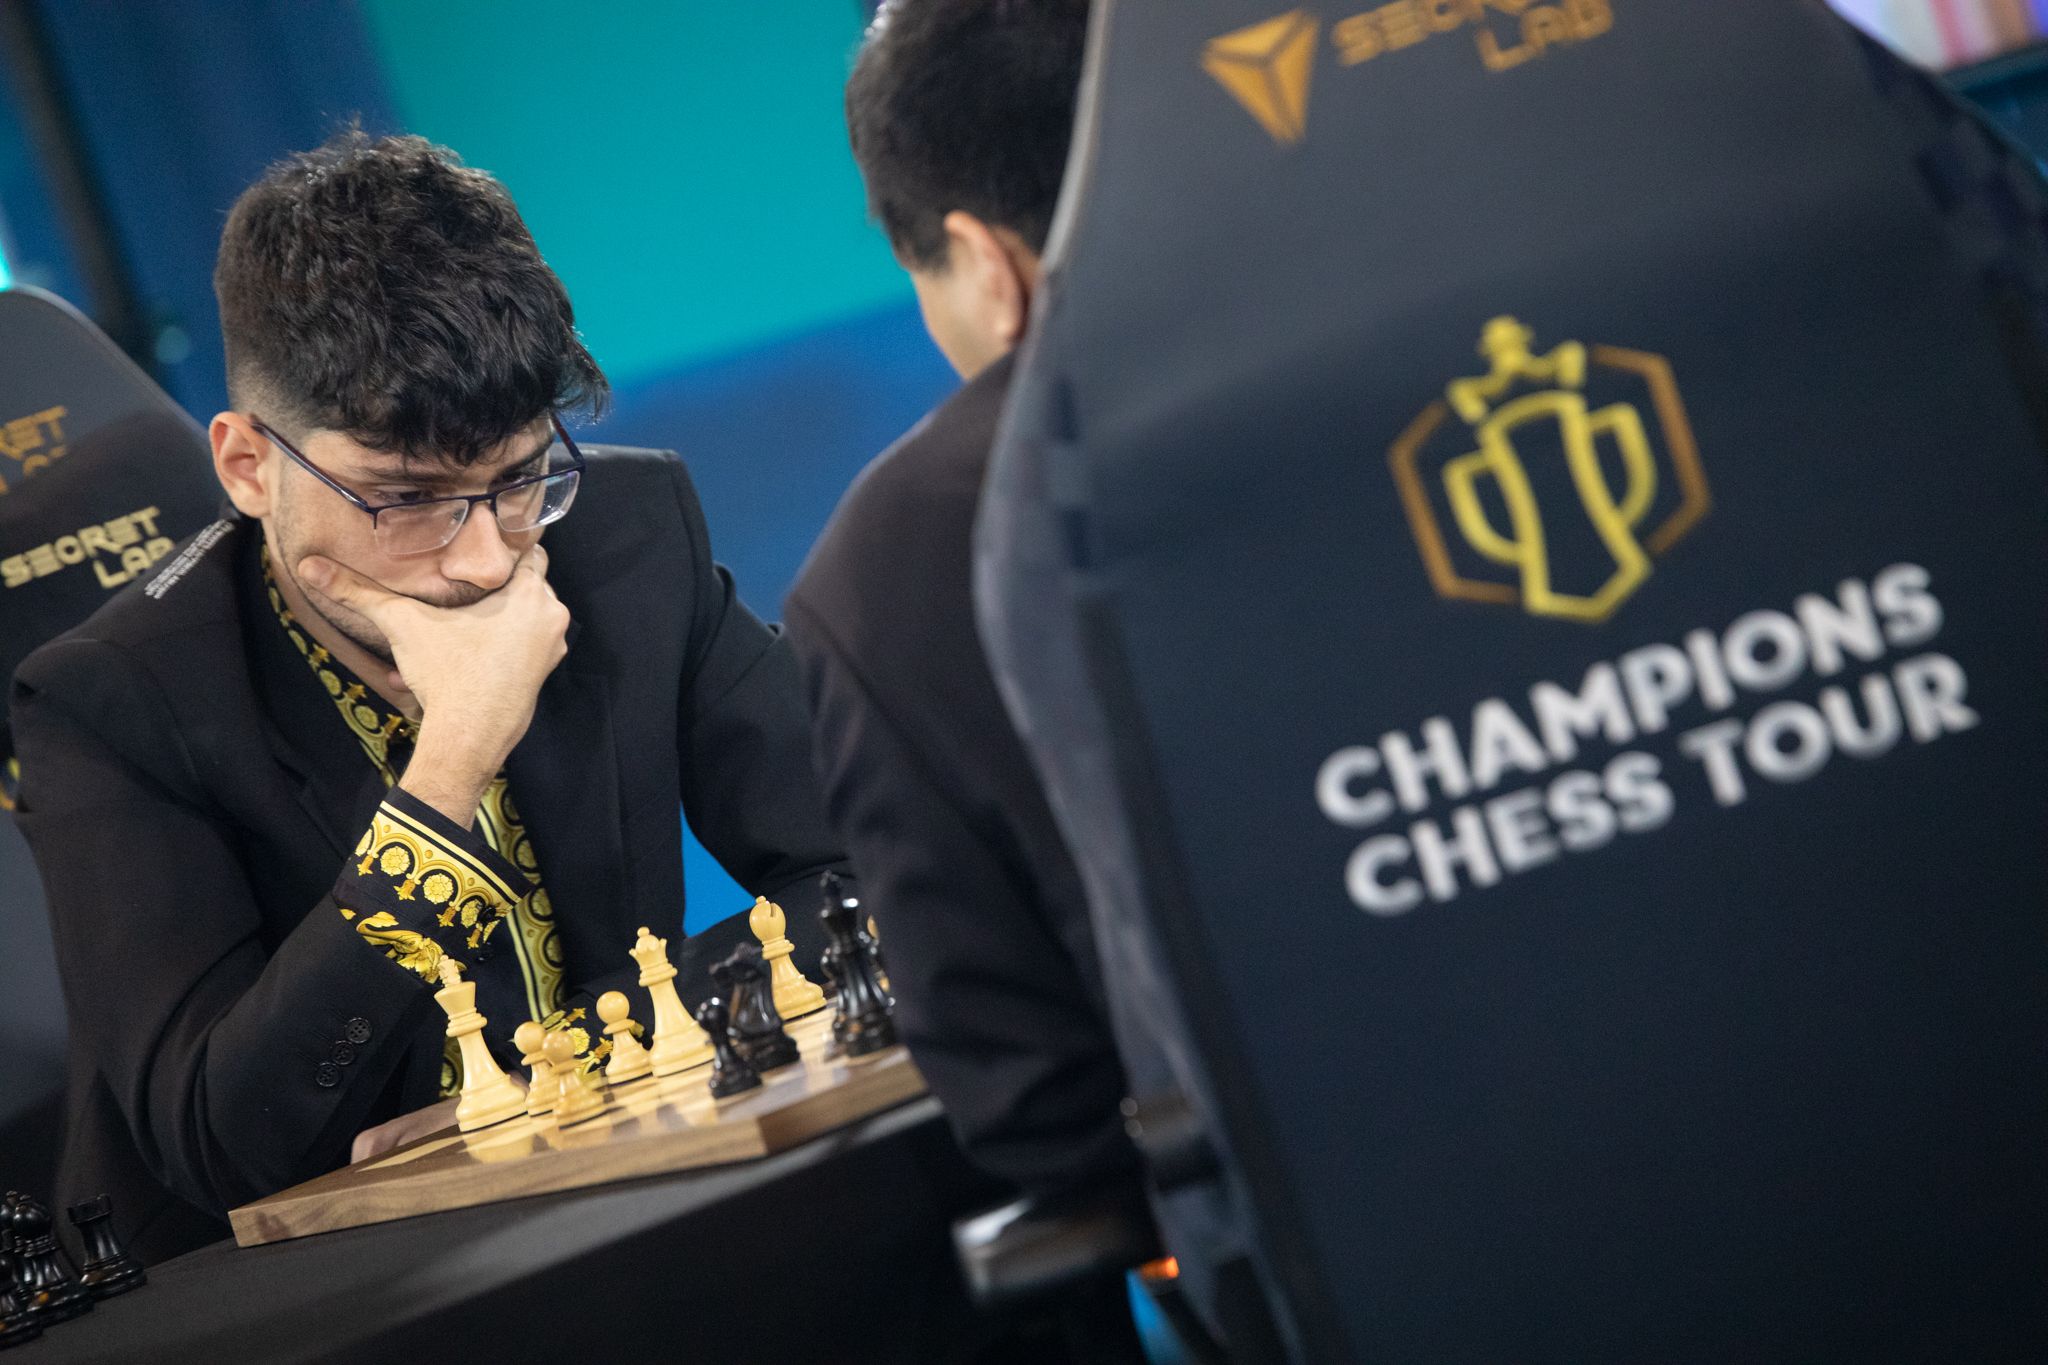 A incrível vitória de Ivano contra os melhores jogadores de xadrez no Grand  Chess Tour. — Eightify